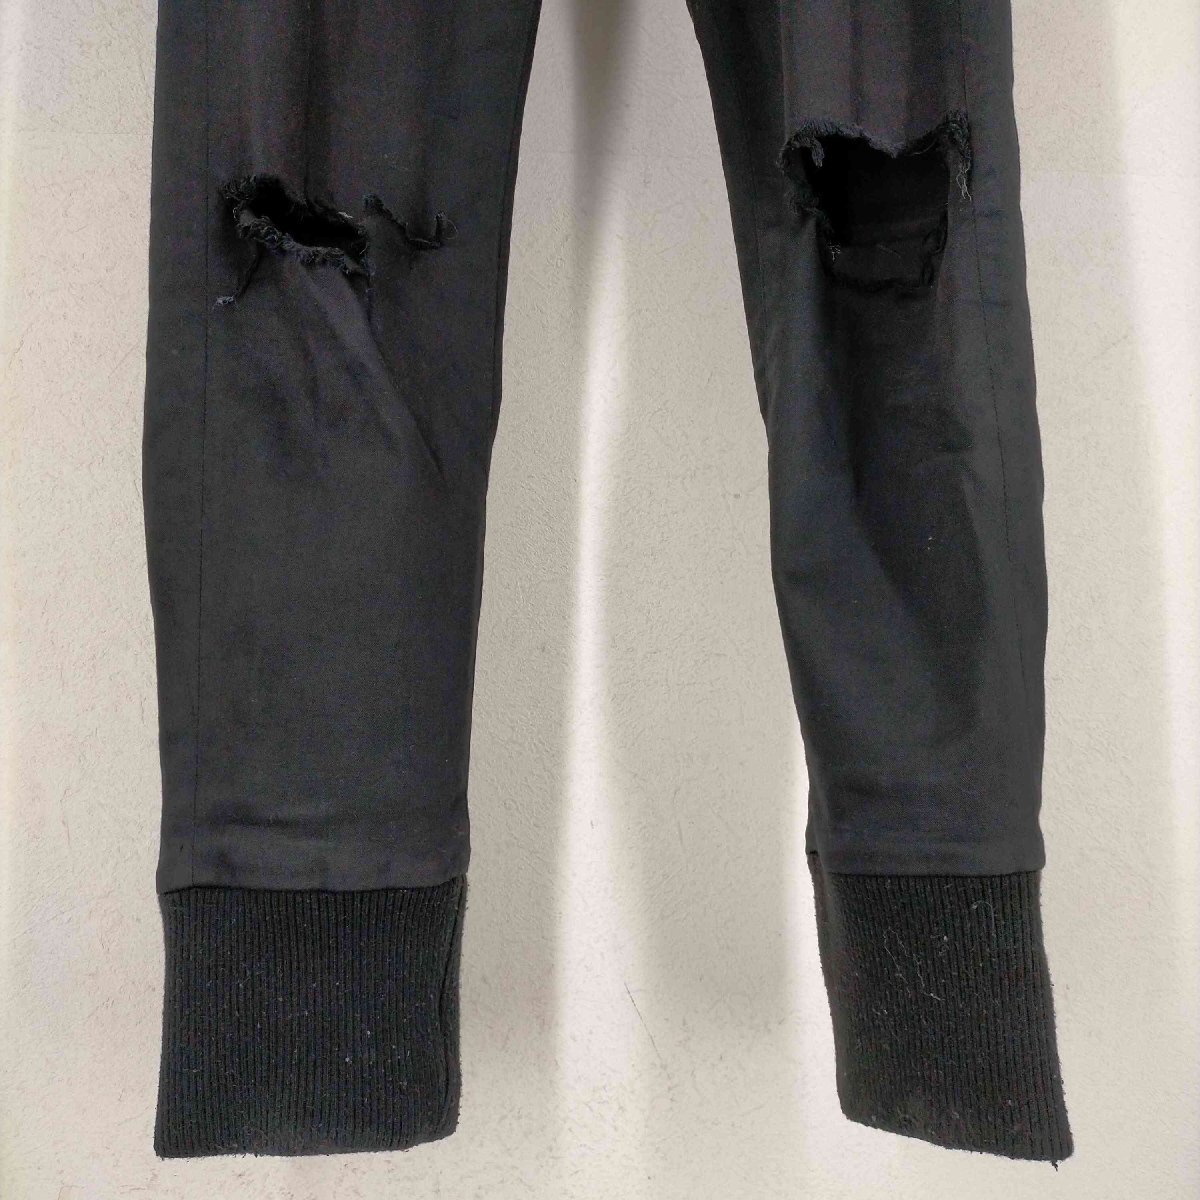 UNDERCOVER(アンダーカバー) MAD ARCHIVES ポケットデザイン裾リブスキニーパンツ メ 中古 古着 0751_画像5